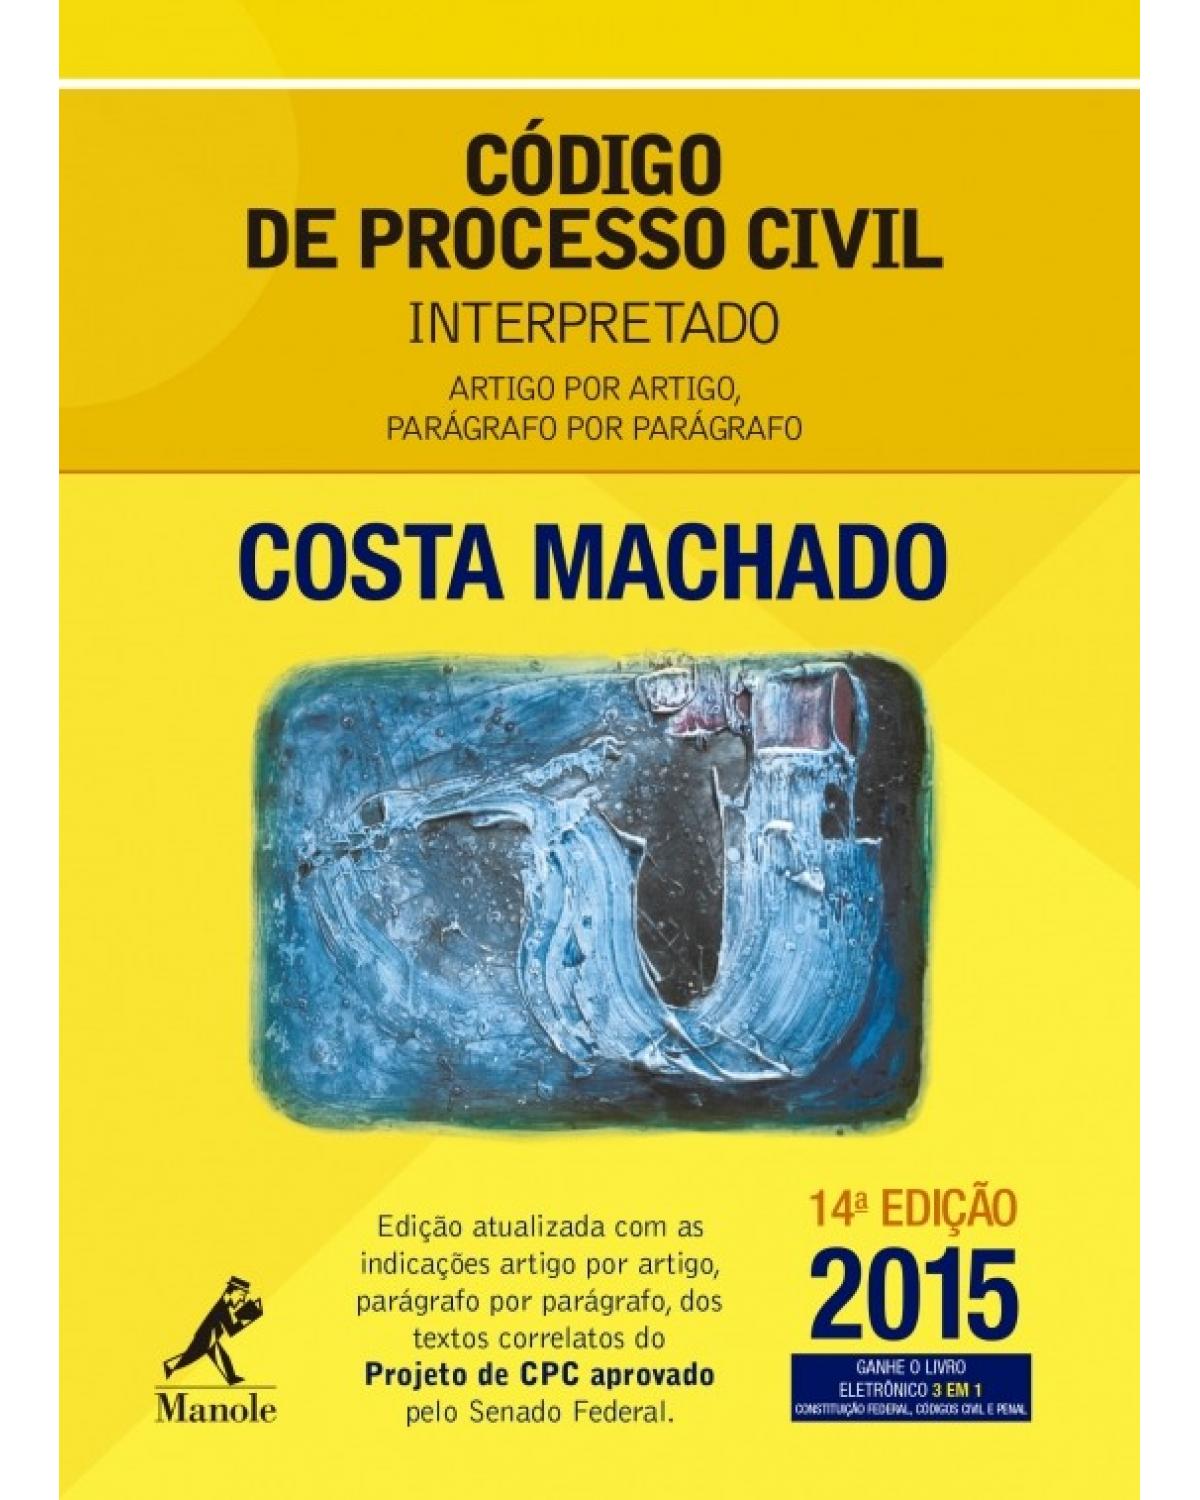 Código de processo civil interpretado - artigo por artigo, parágrafo por parágrafo - 14ª Edição | 2015